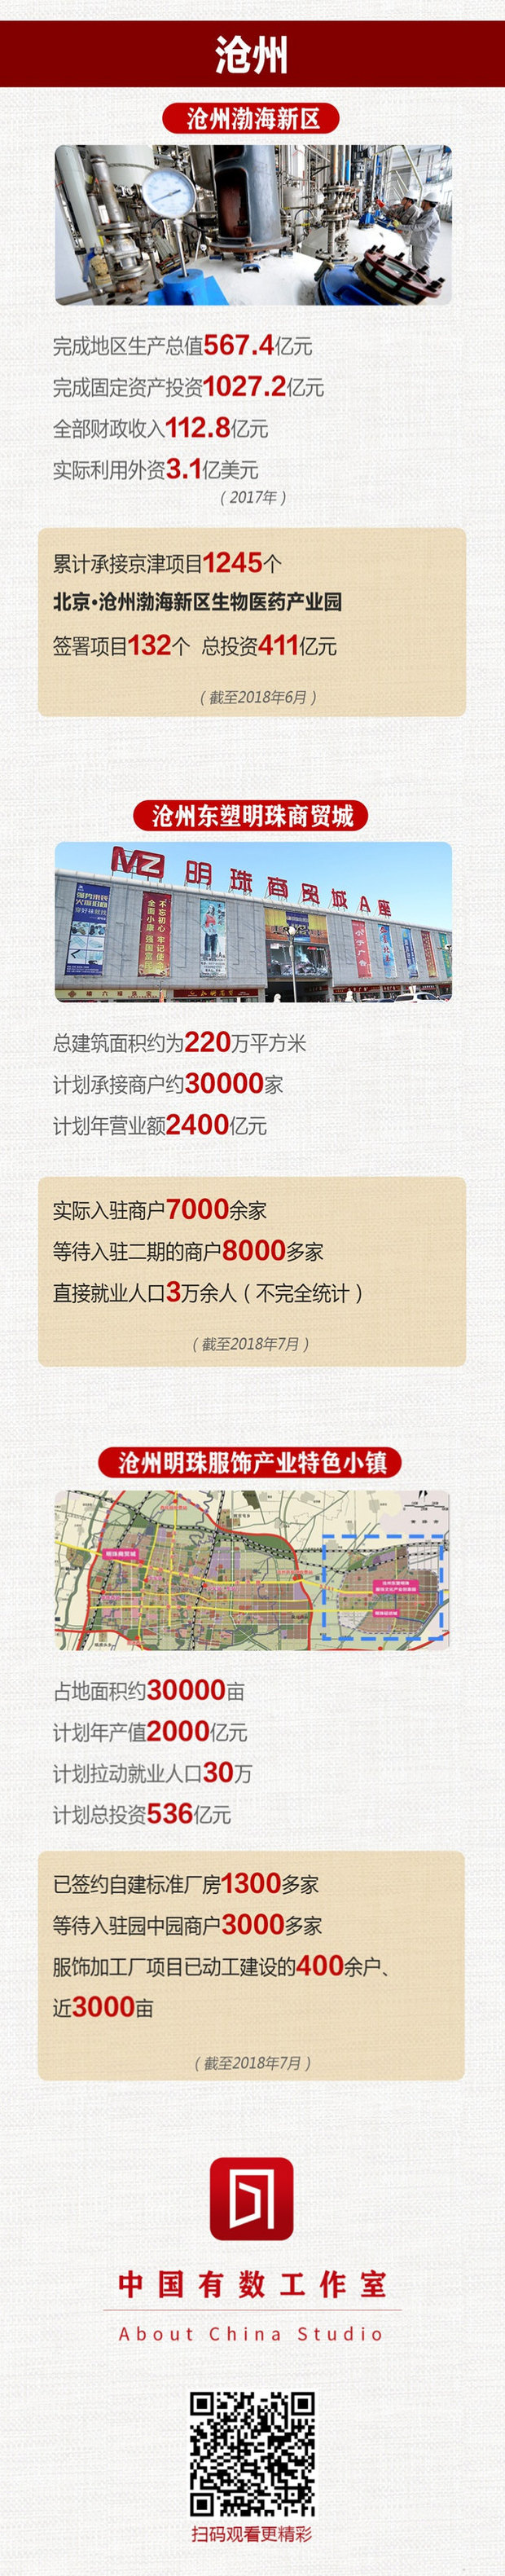 京津冀協同發展 這三城河北有“數”